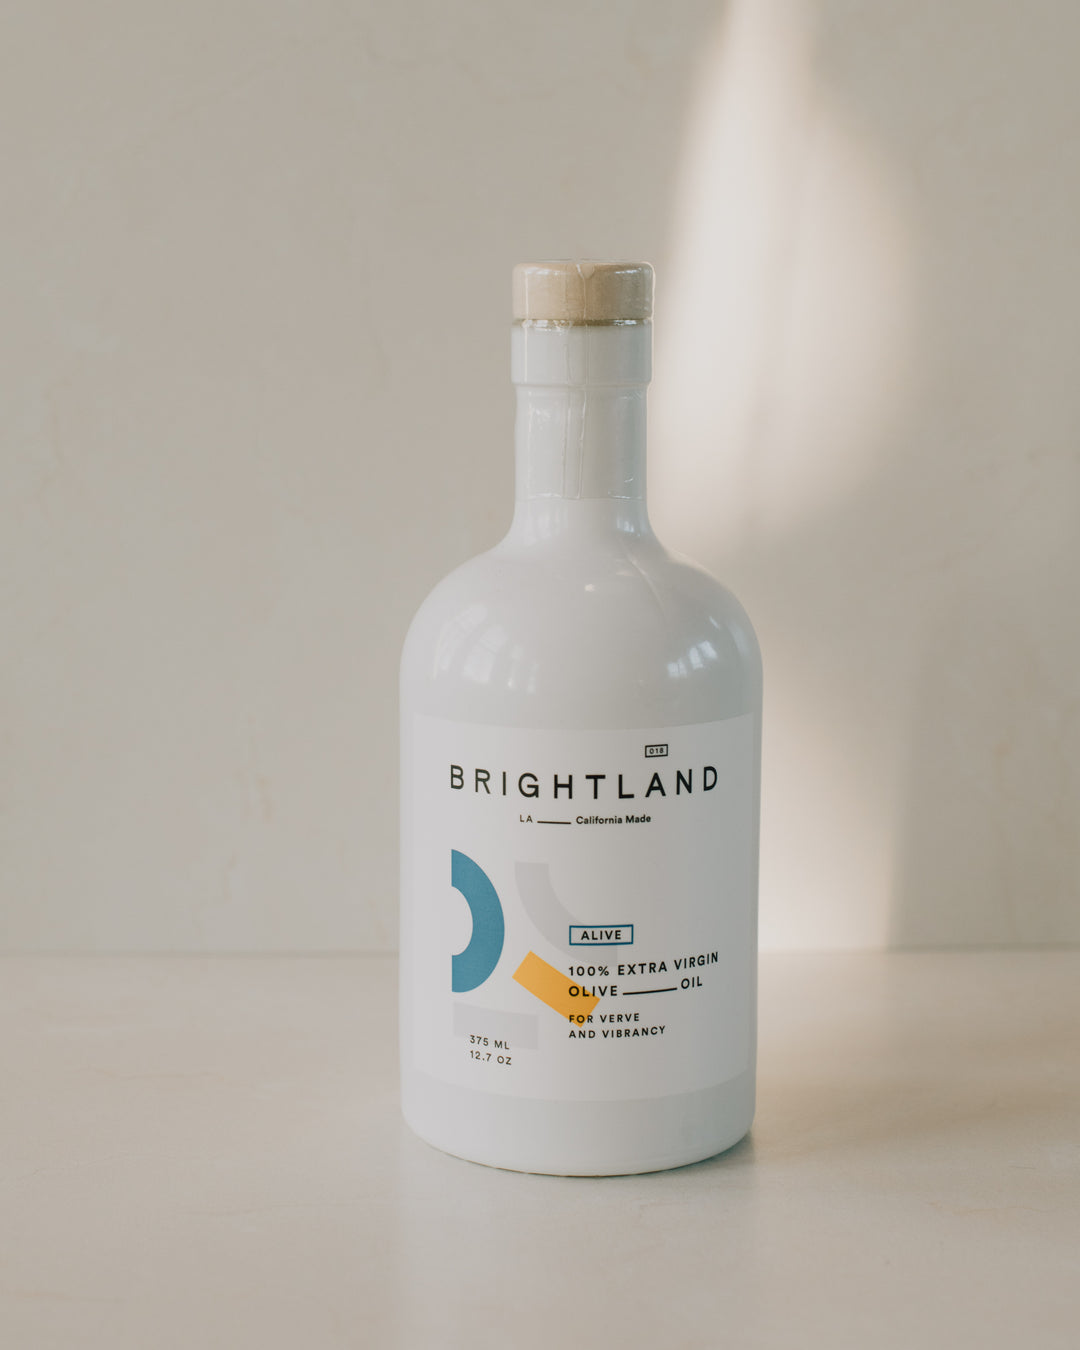 Brightland 'Alive' 100% Extra Virgin Olive Oil